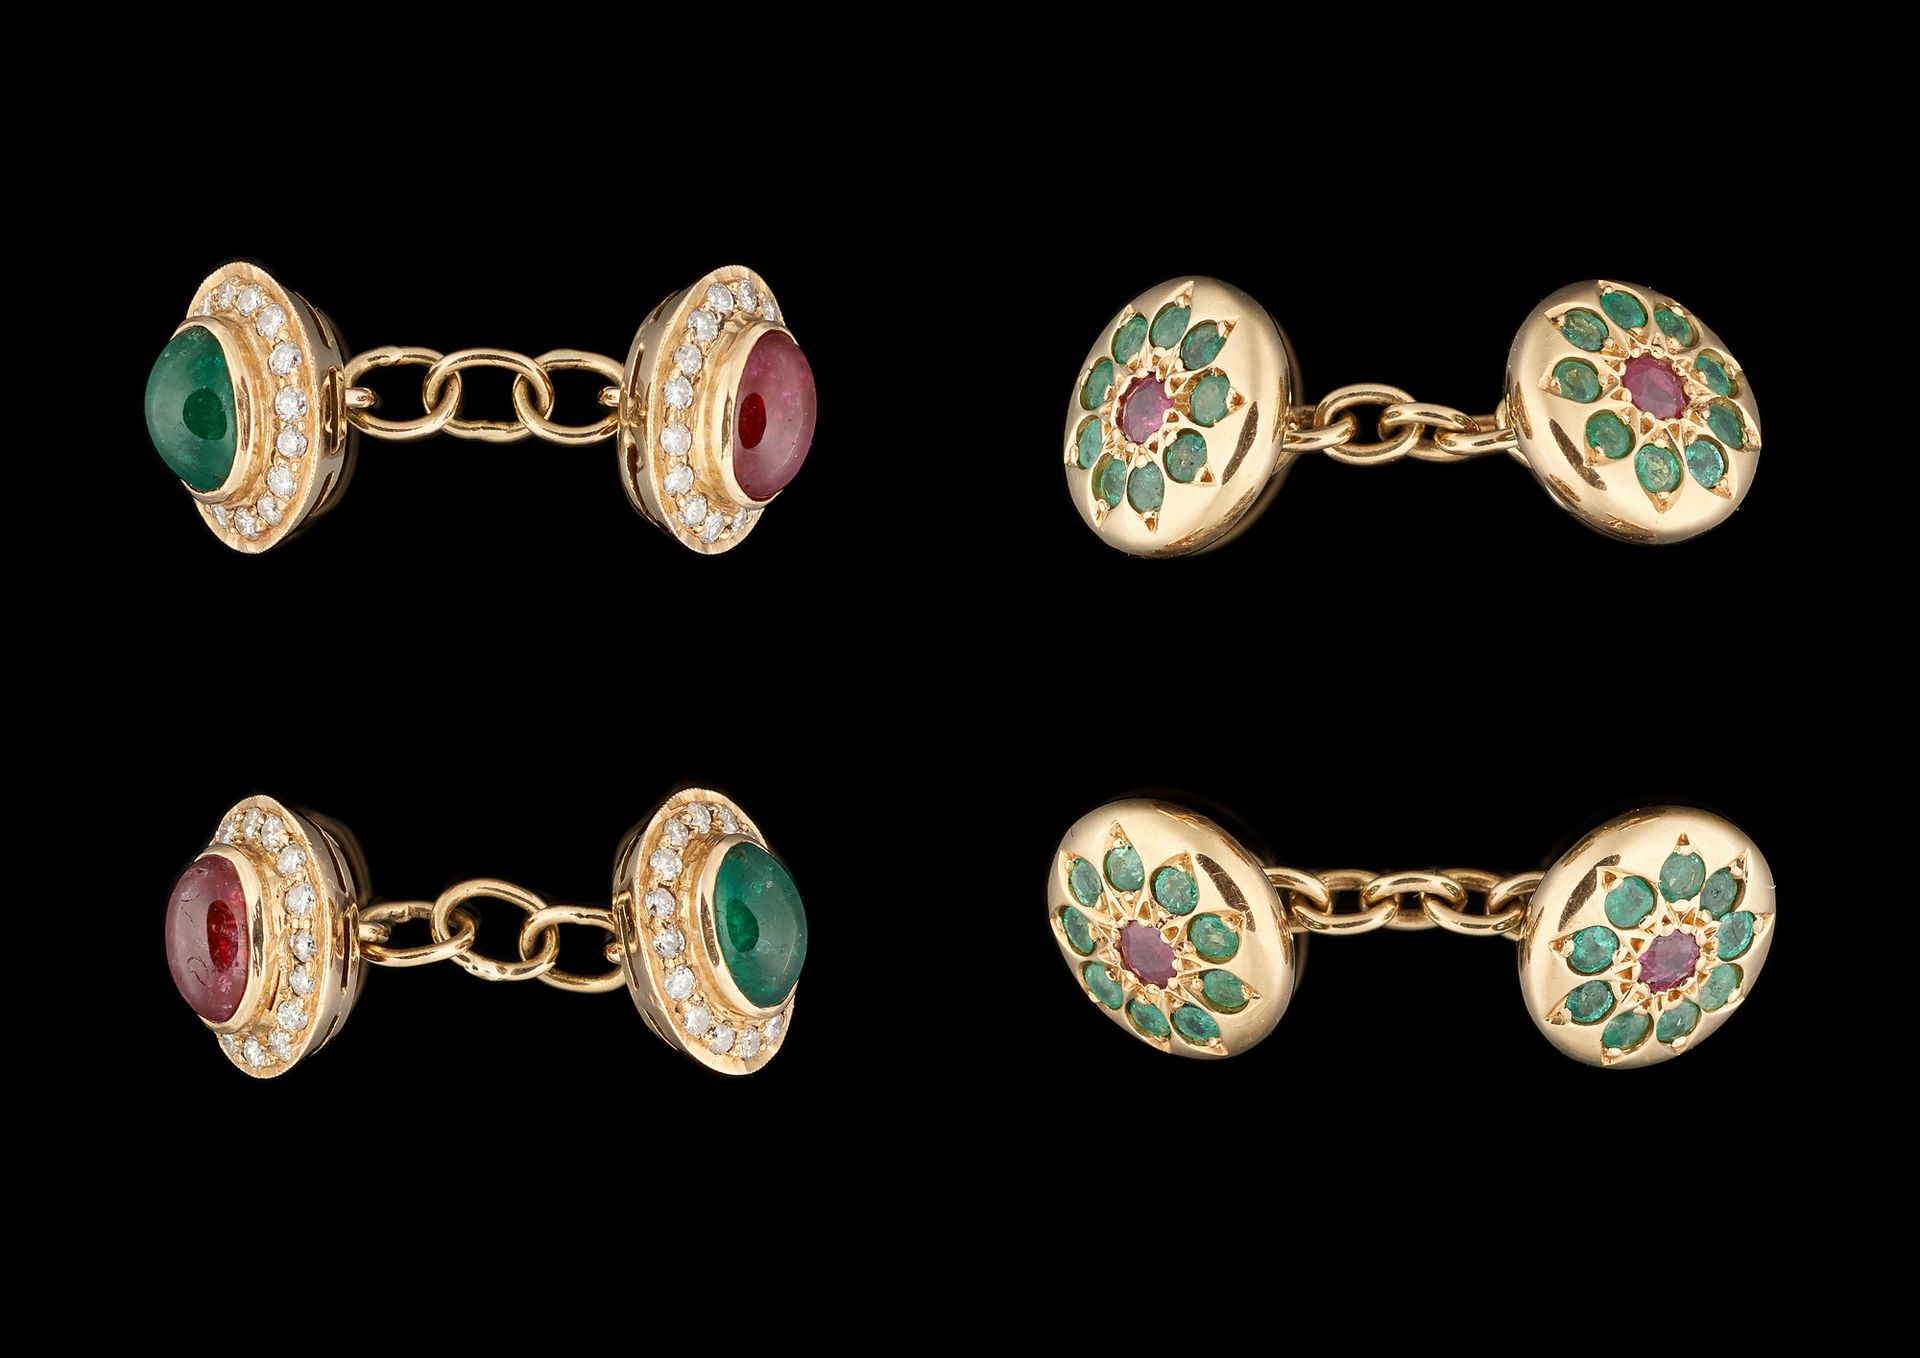 Joaillerie. 珠宝：由两对镶有红宝石、绿宝石和钻石的黄金袖扣组成的拍品。